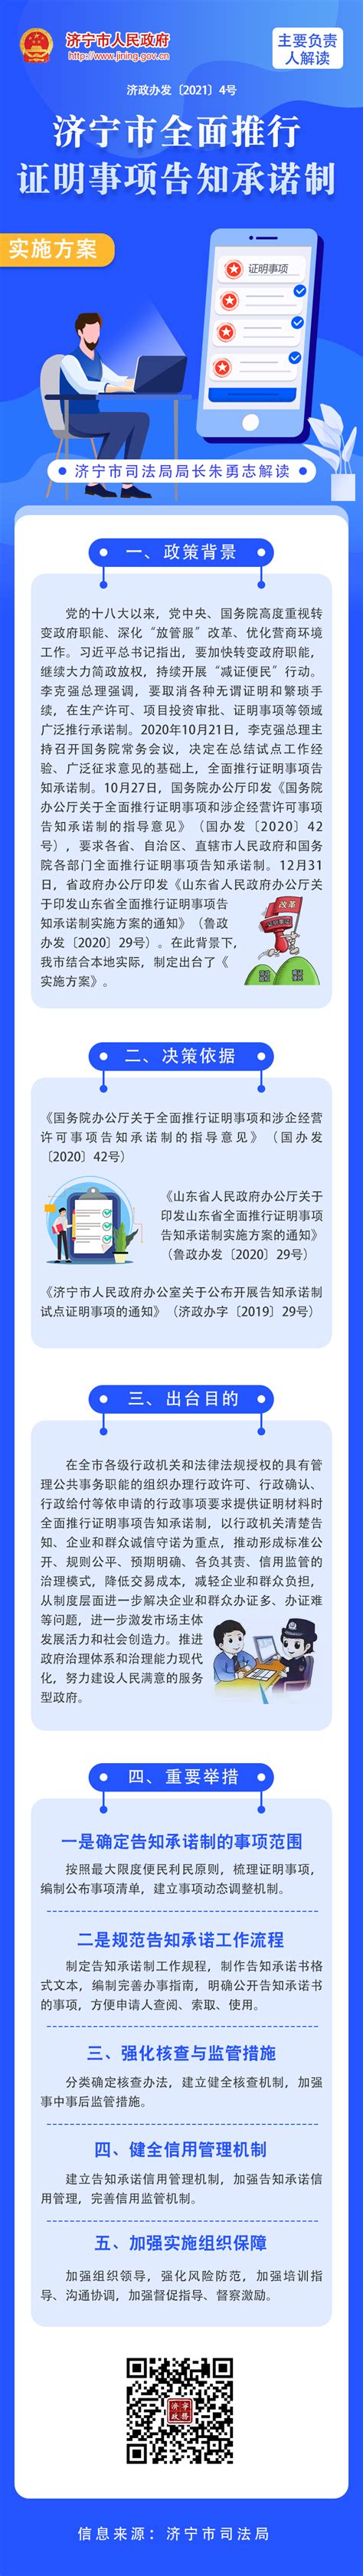 2019年济宁市重点研发计划名单公示 - 民生 - 济宁 - 济宁新闻网